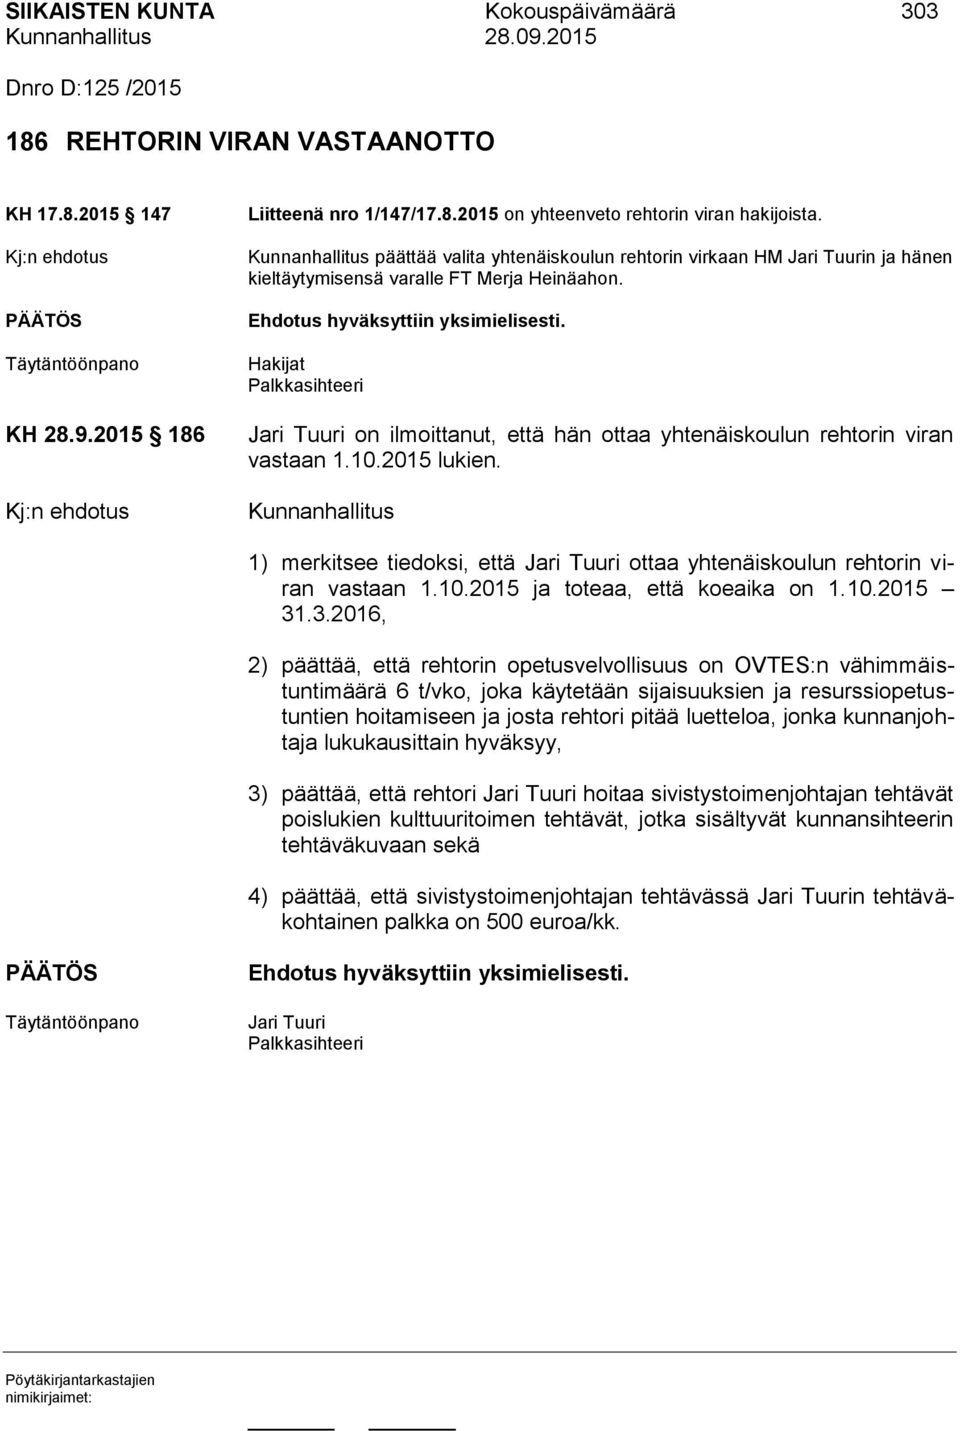 Hakijat Palkkasihteeri Jari Tuuri on ilmoittanut, että hän ottaa yhtenäiskoulun rehtorin viran vastaan 1.10.2015 lukien.